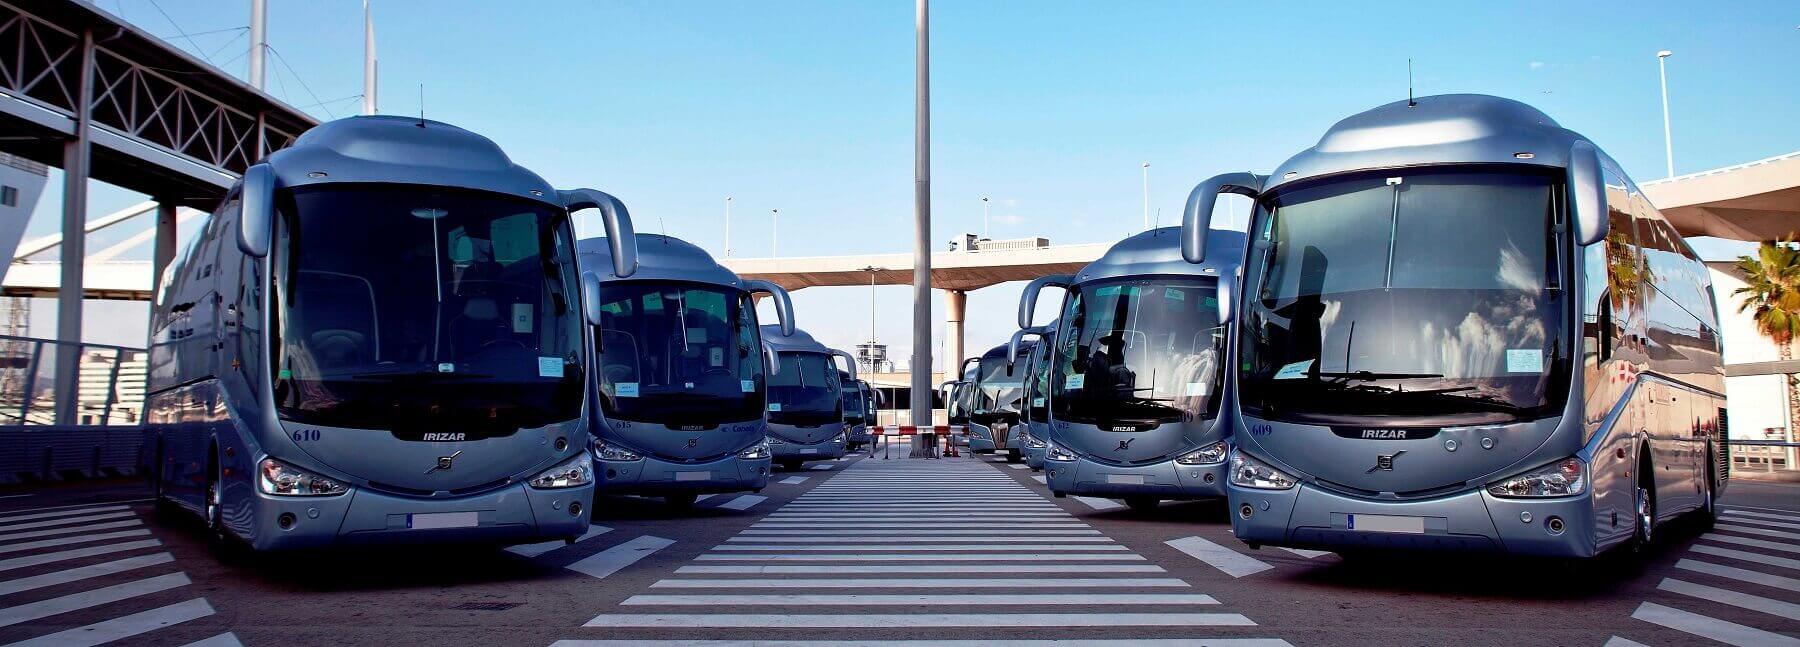 Lloguer d'autocars i Minibusos a Barcelona